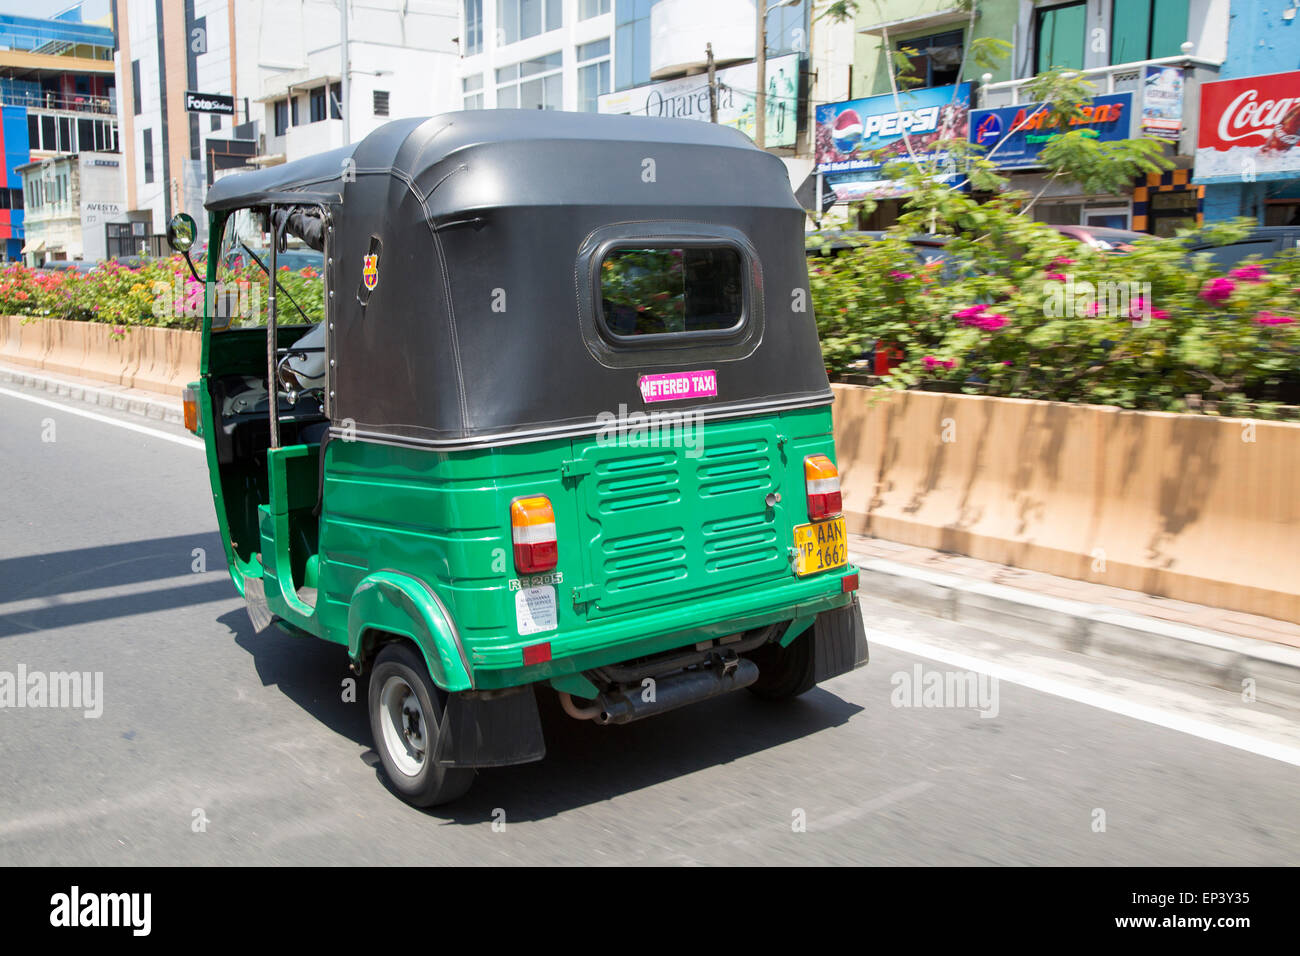 Tuk Tuk motorisierter Rikscha Dreirad Taxi mit Taxameter Fahrzeug